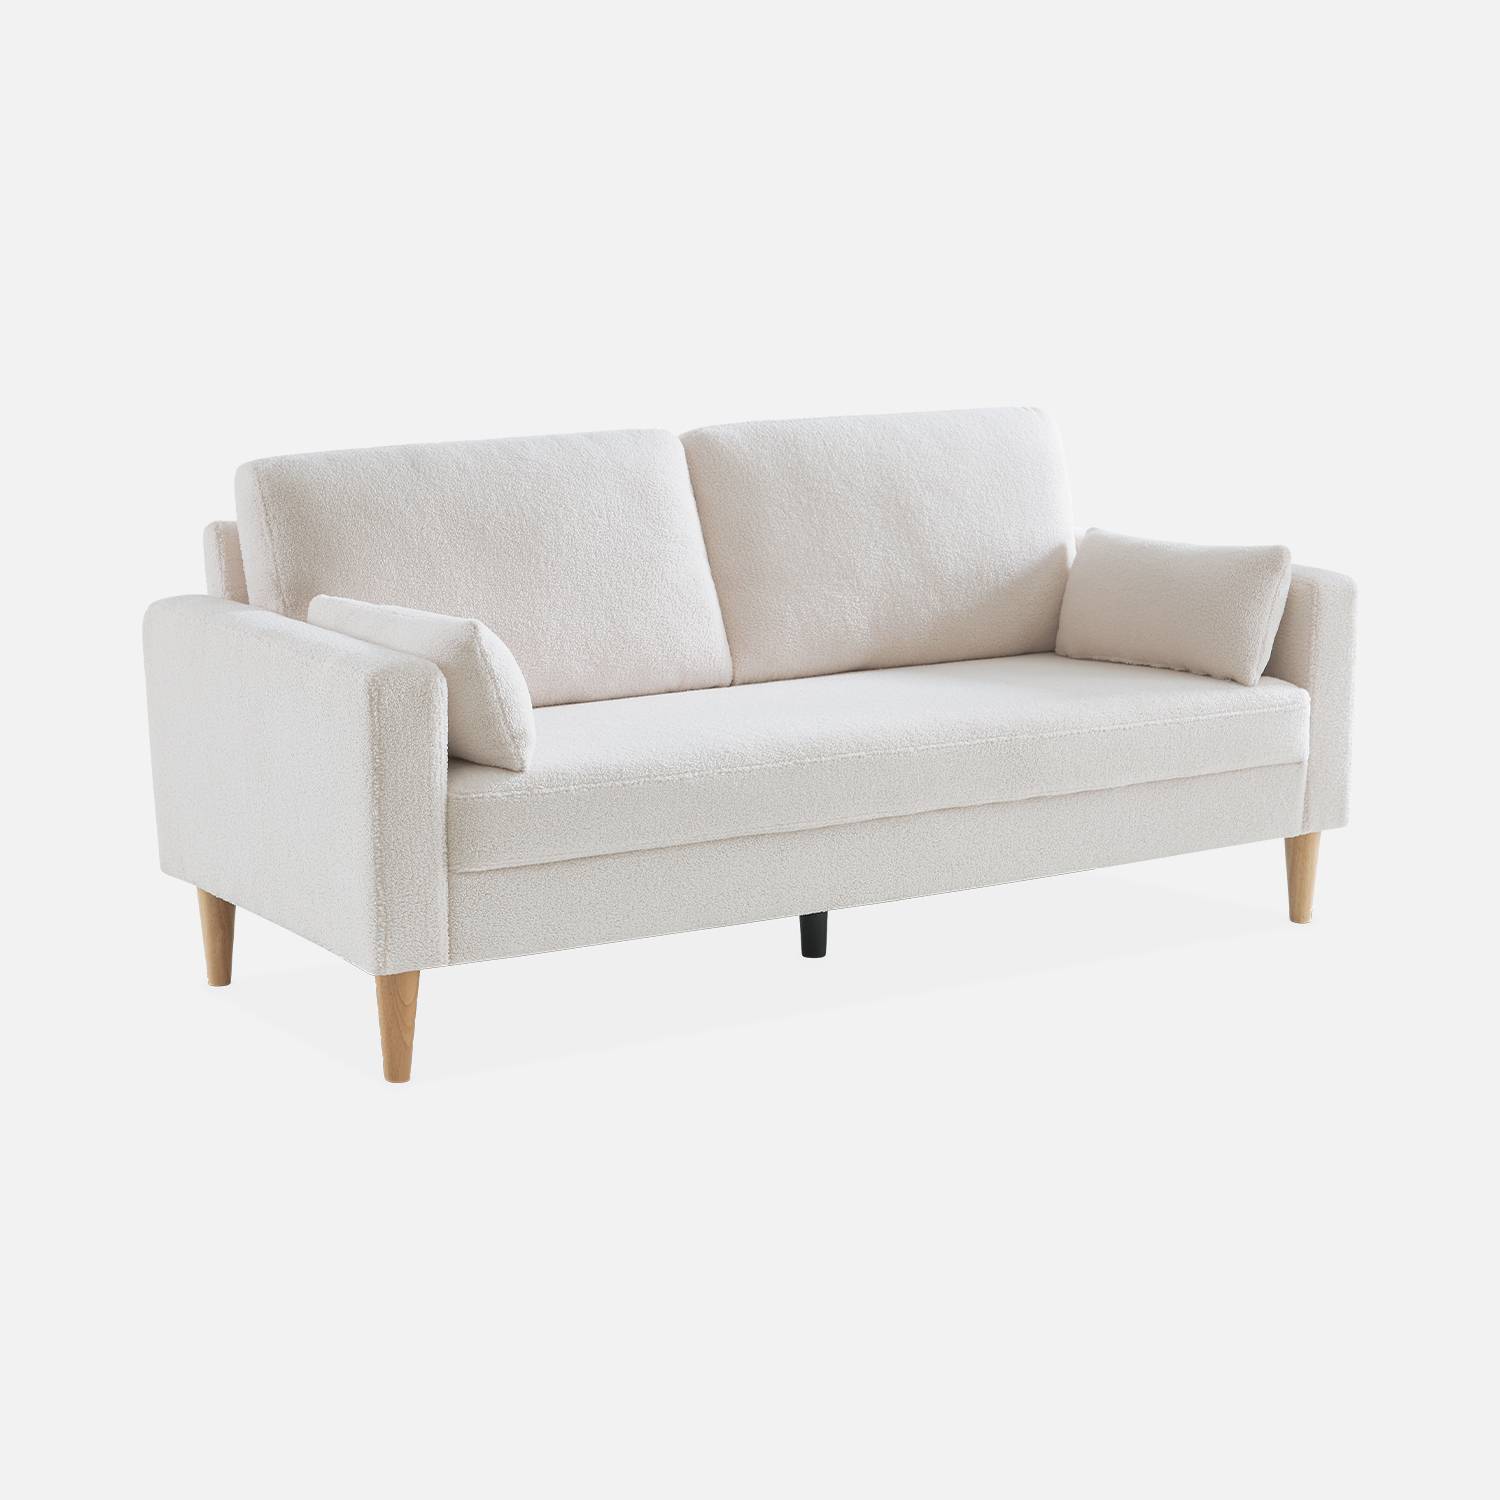 Sofa mit weißem Bouclé Teddystoff - Bjorn - 3-sitziges fixes Sofa mit Holzbeinen, skandinavischer Stil   Photo3